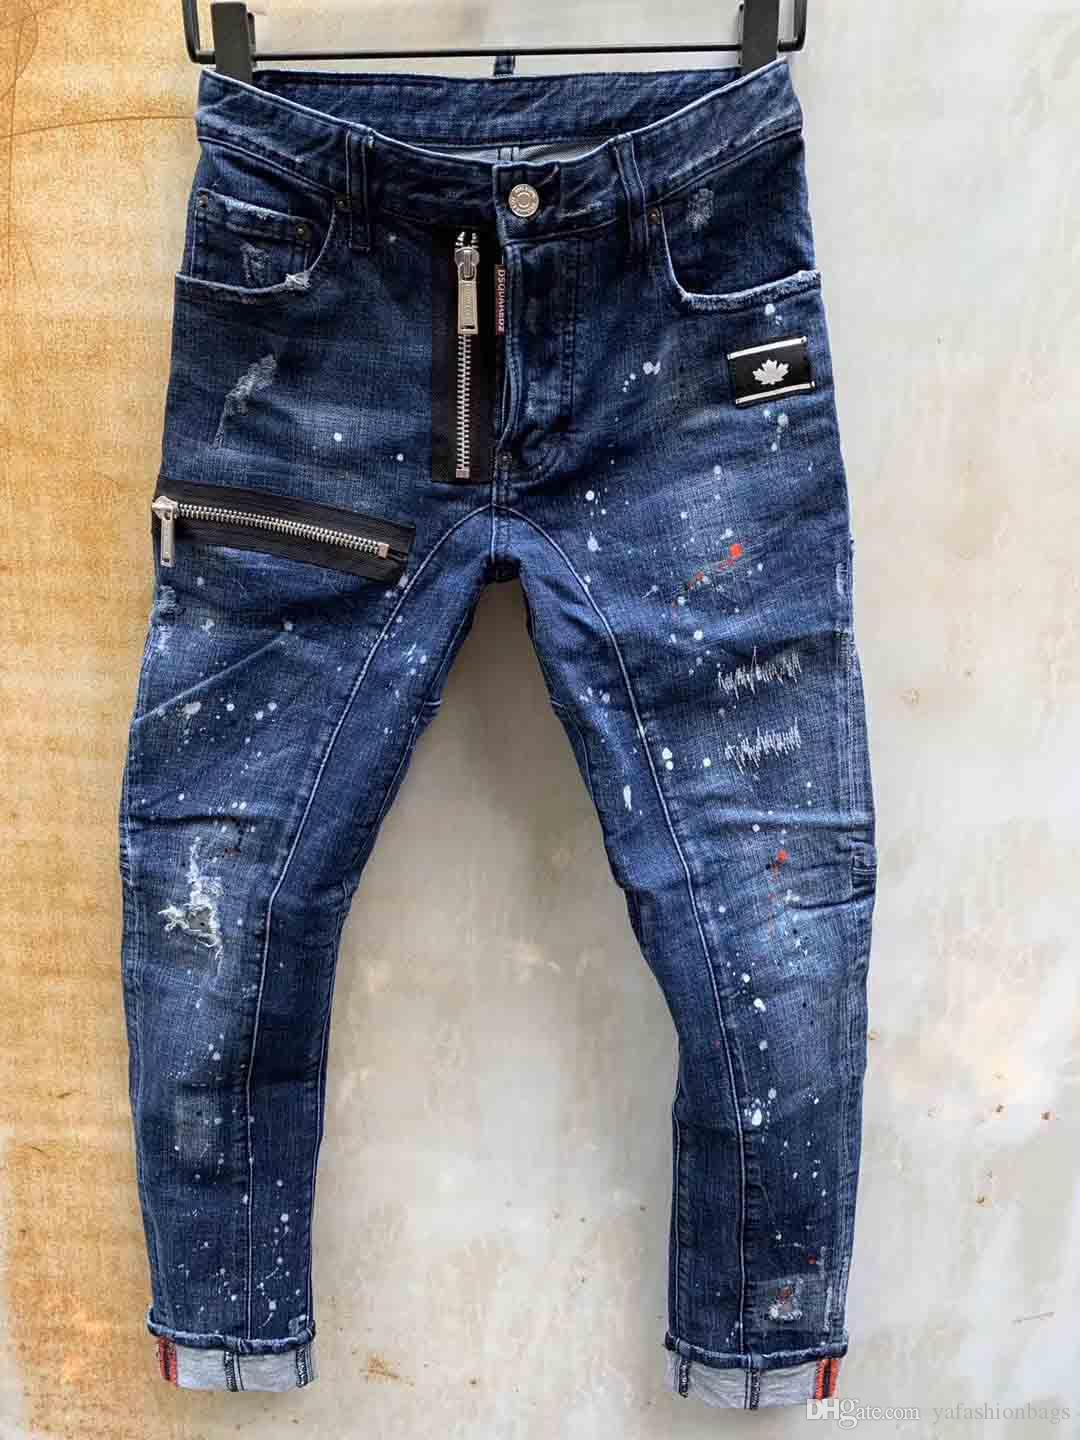 jeans pant design 2019